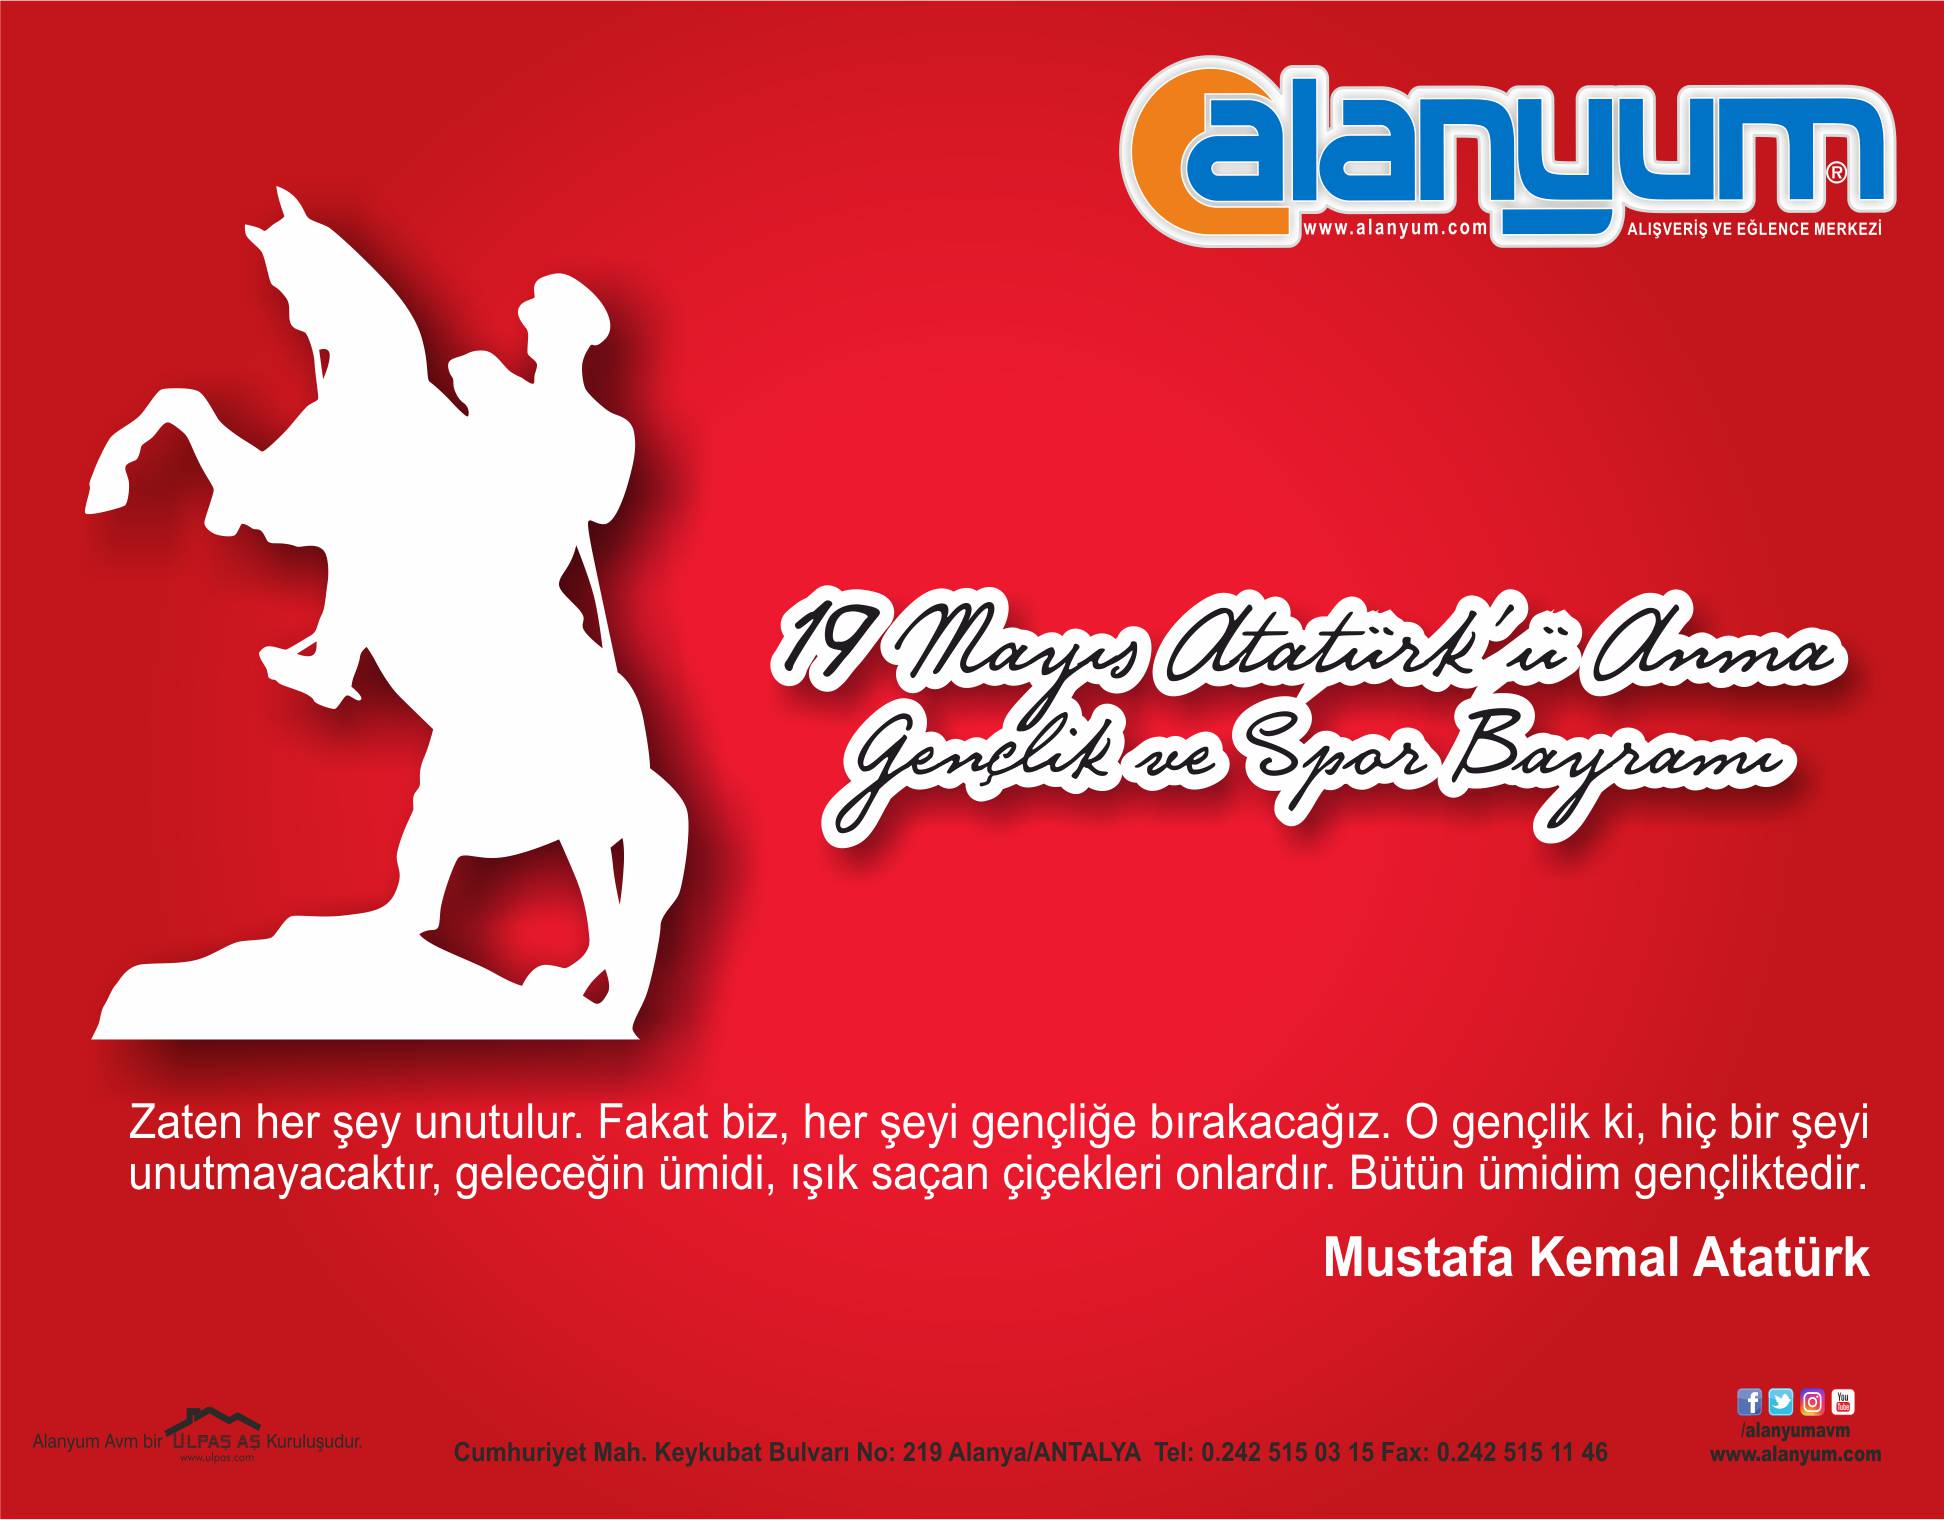 19 Mayıs Atatürk'ü Anma Gençlik ve Spor Bayramı'mız kutlu olsun!